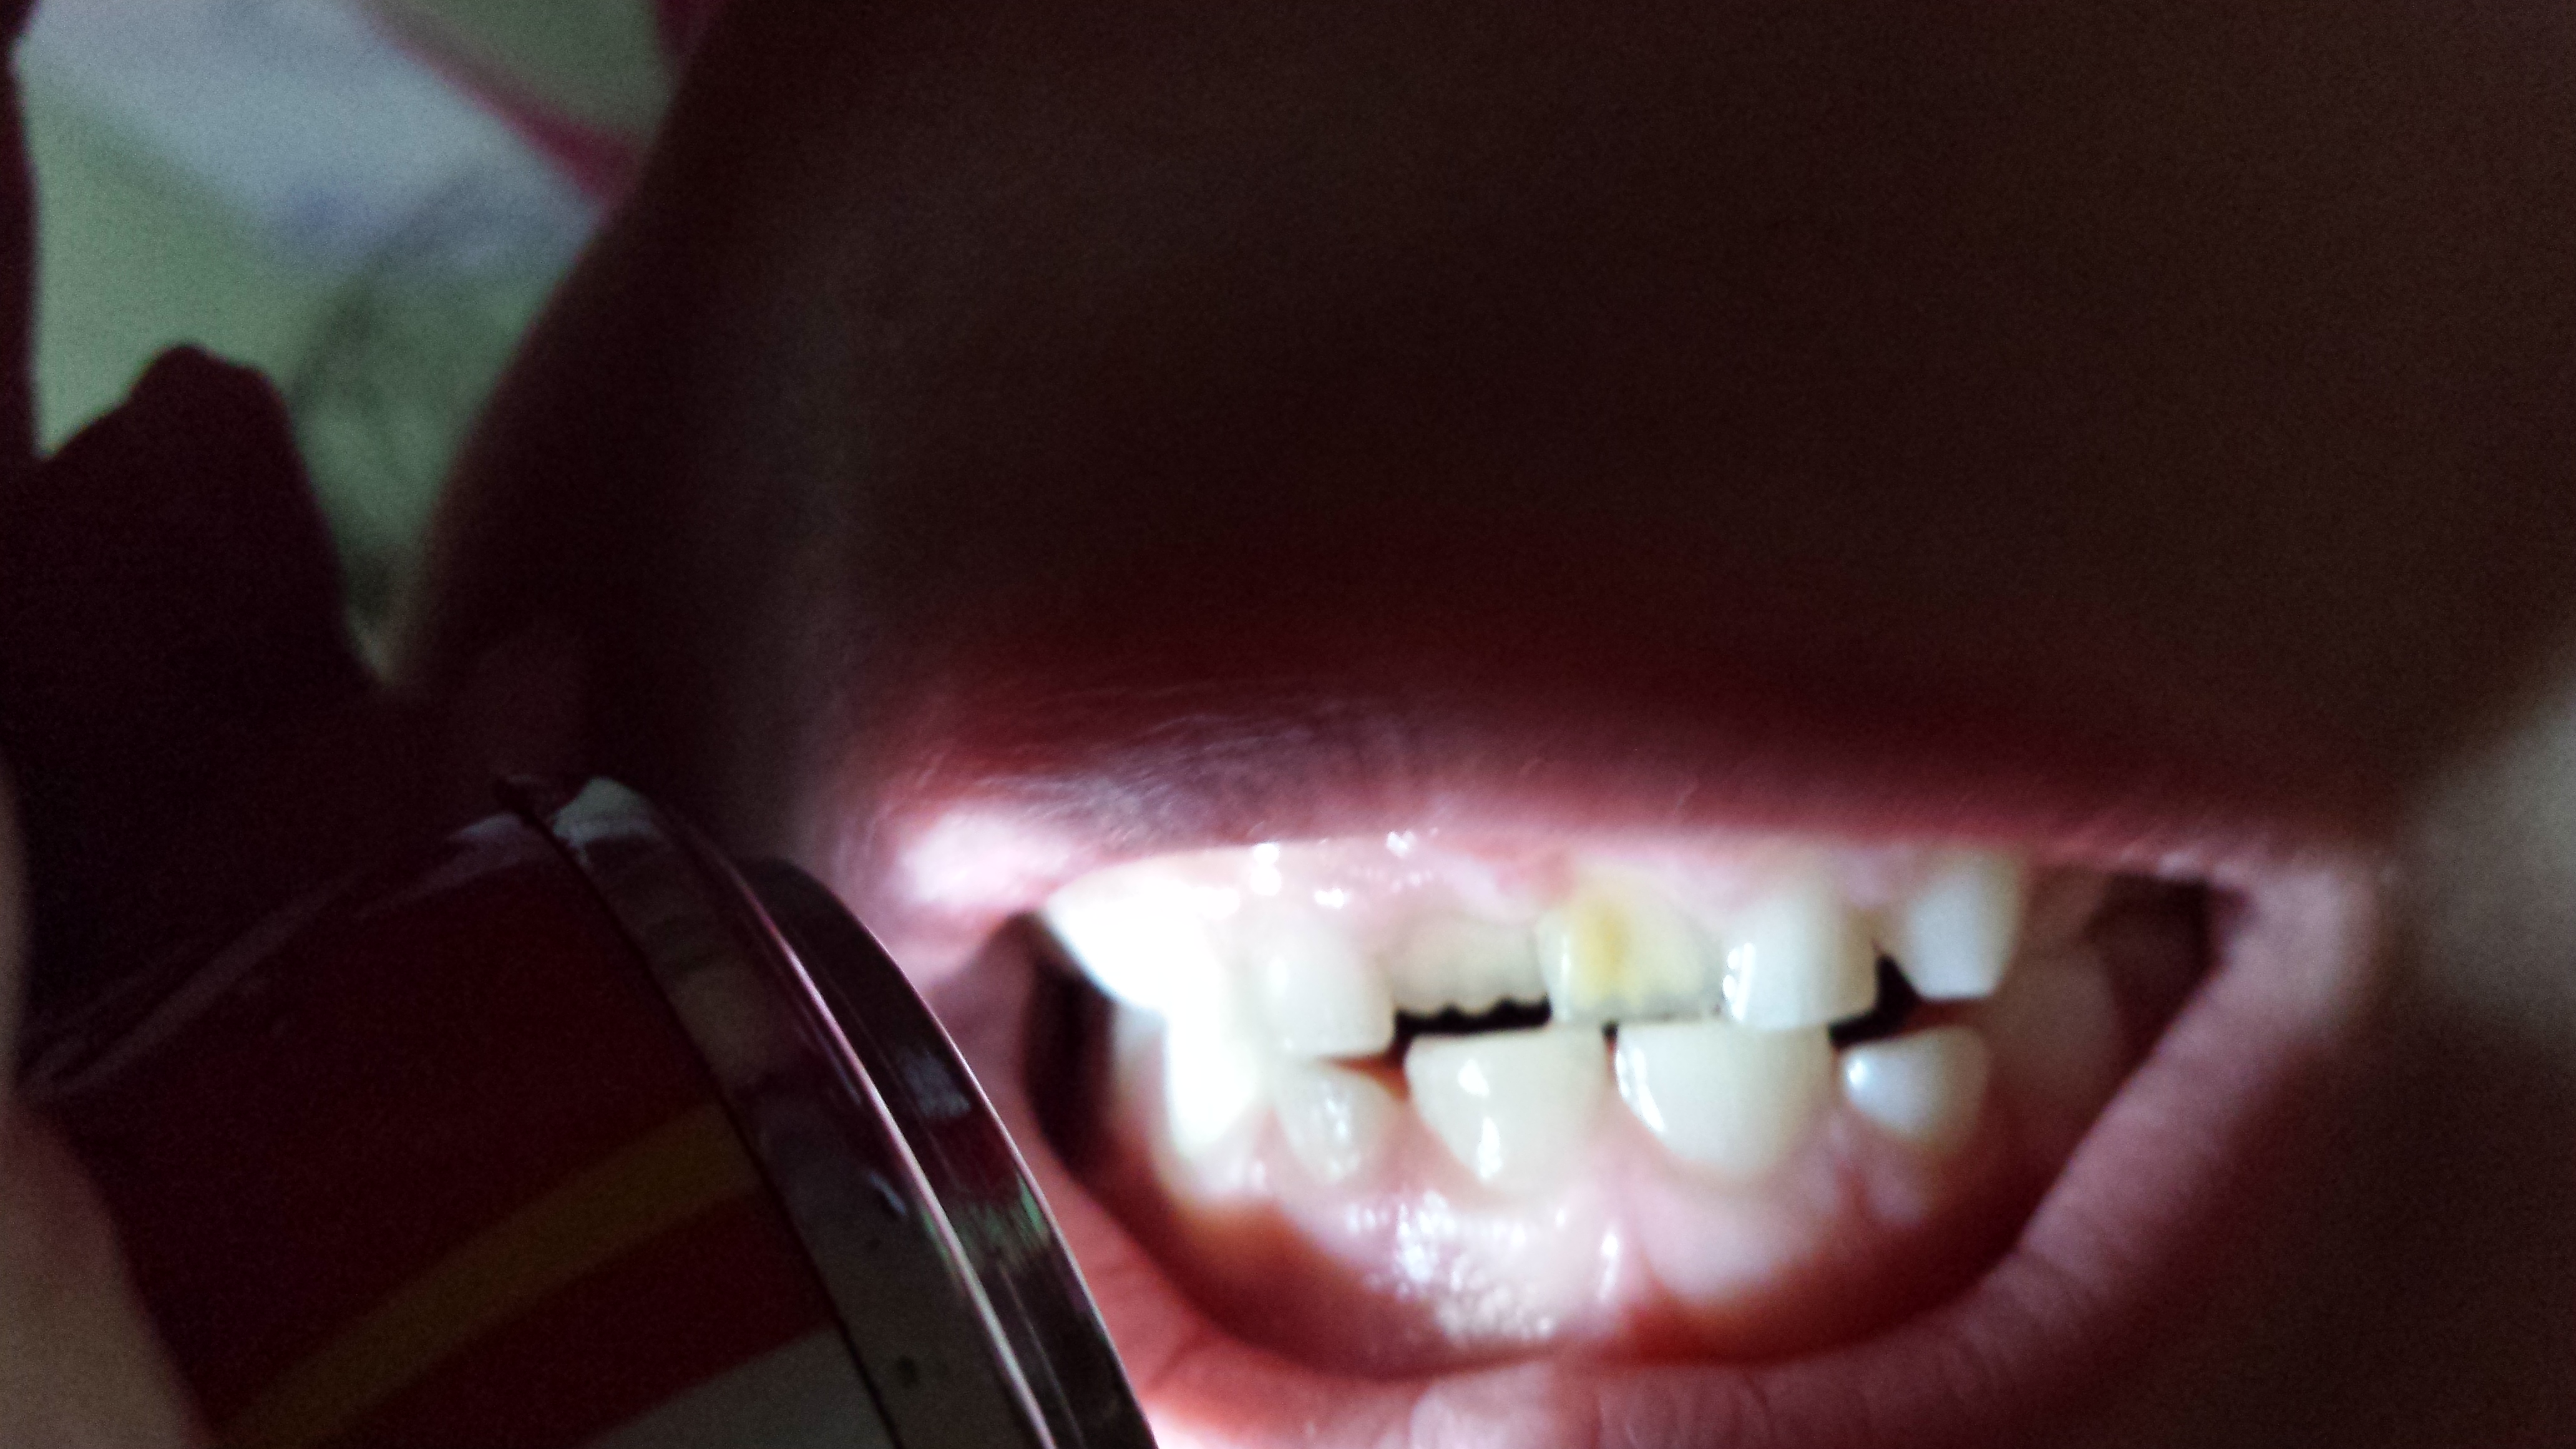 Mia figlia di 5 anni ha una macchia giallastra sul dente